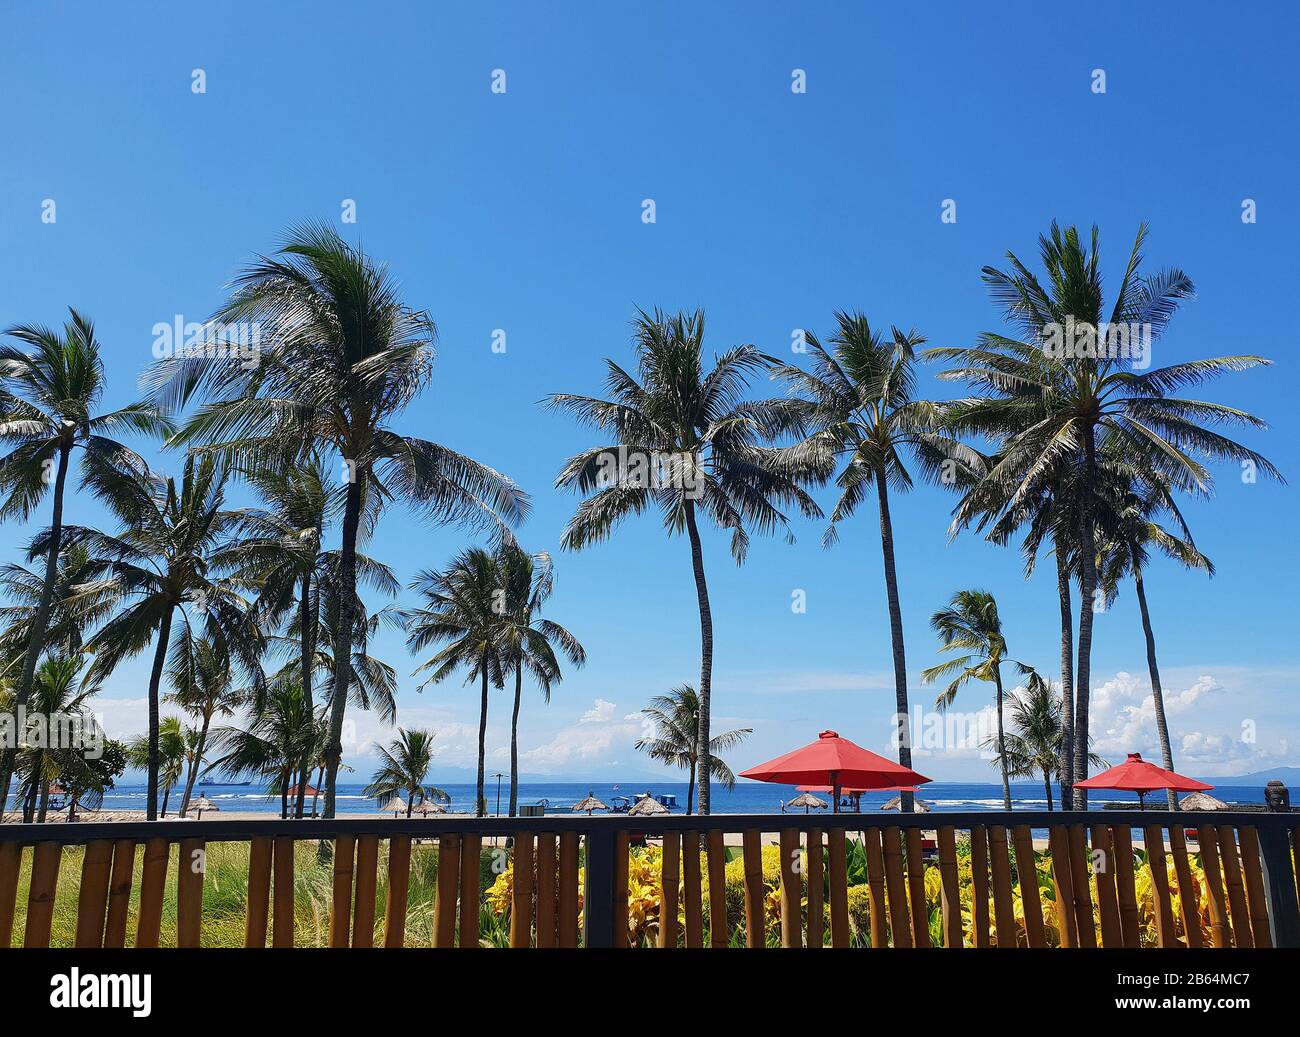 Vista del complejo de playa Club Med, Bali, Indonesia Foto de stock